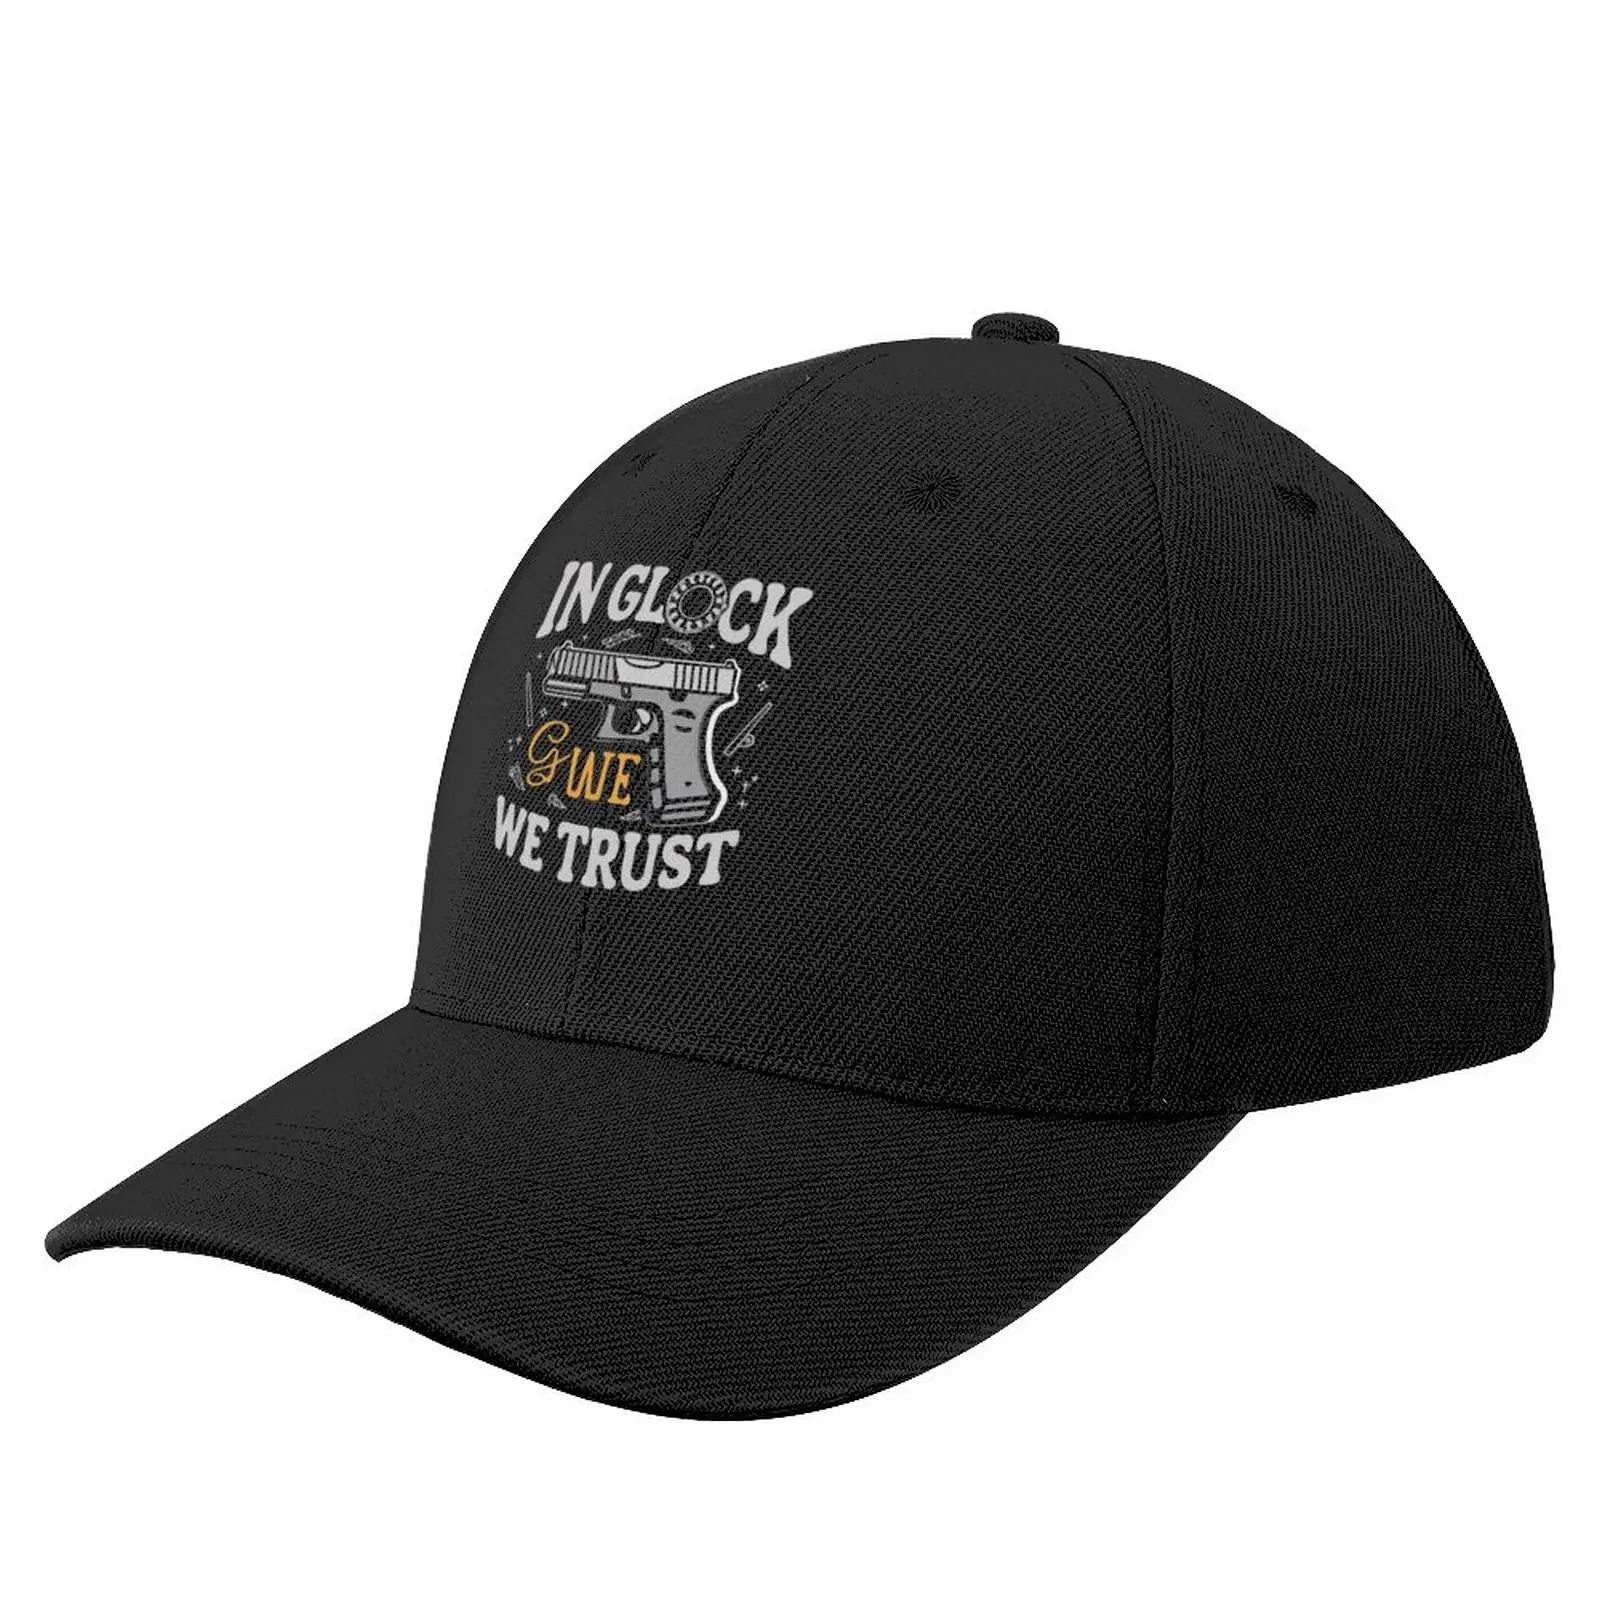 

In Glock We Trust Baseball Cap Rave derby hat Golf Wear boonie hats Women's Hats 2023 Men's